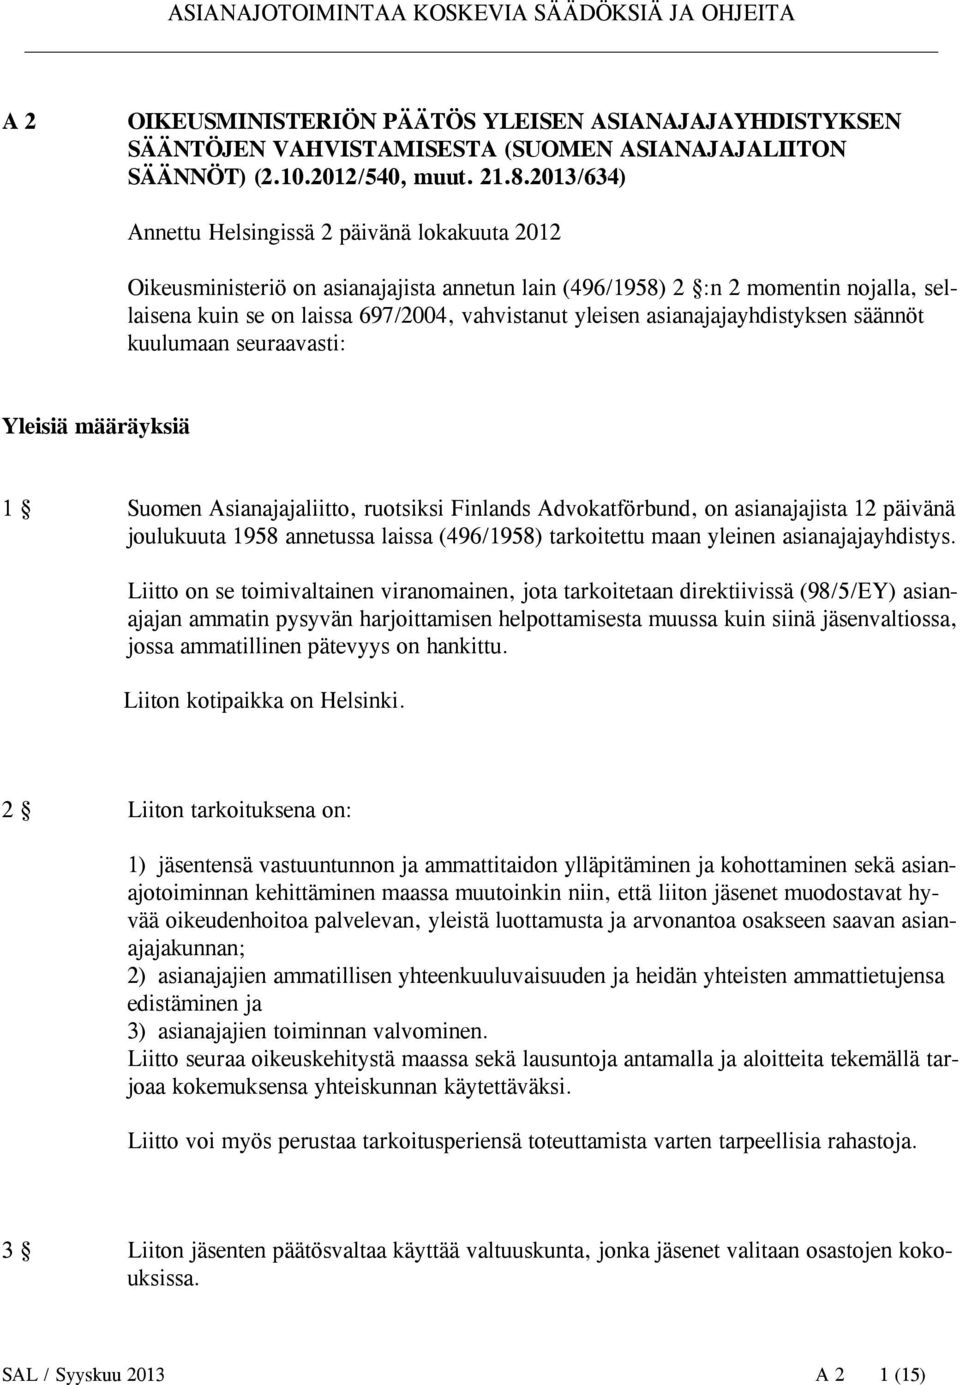 asianajajayhdistyksen säännöt kuulumaan seuraavasti: Yleisiä määräyksiä 1 Suomen Asianajajaliitto, ruotsiksi Finlands Advokatförbund, on asianajajista 12 päivänä joulukuuta 1958 annetussa laissa